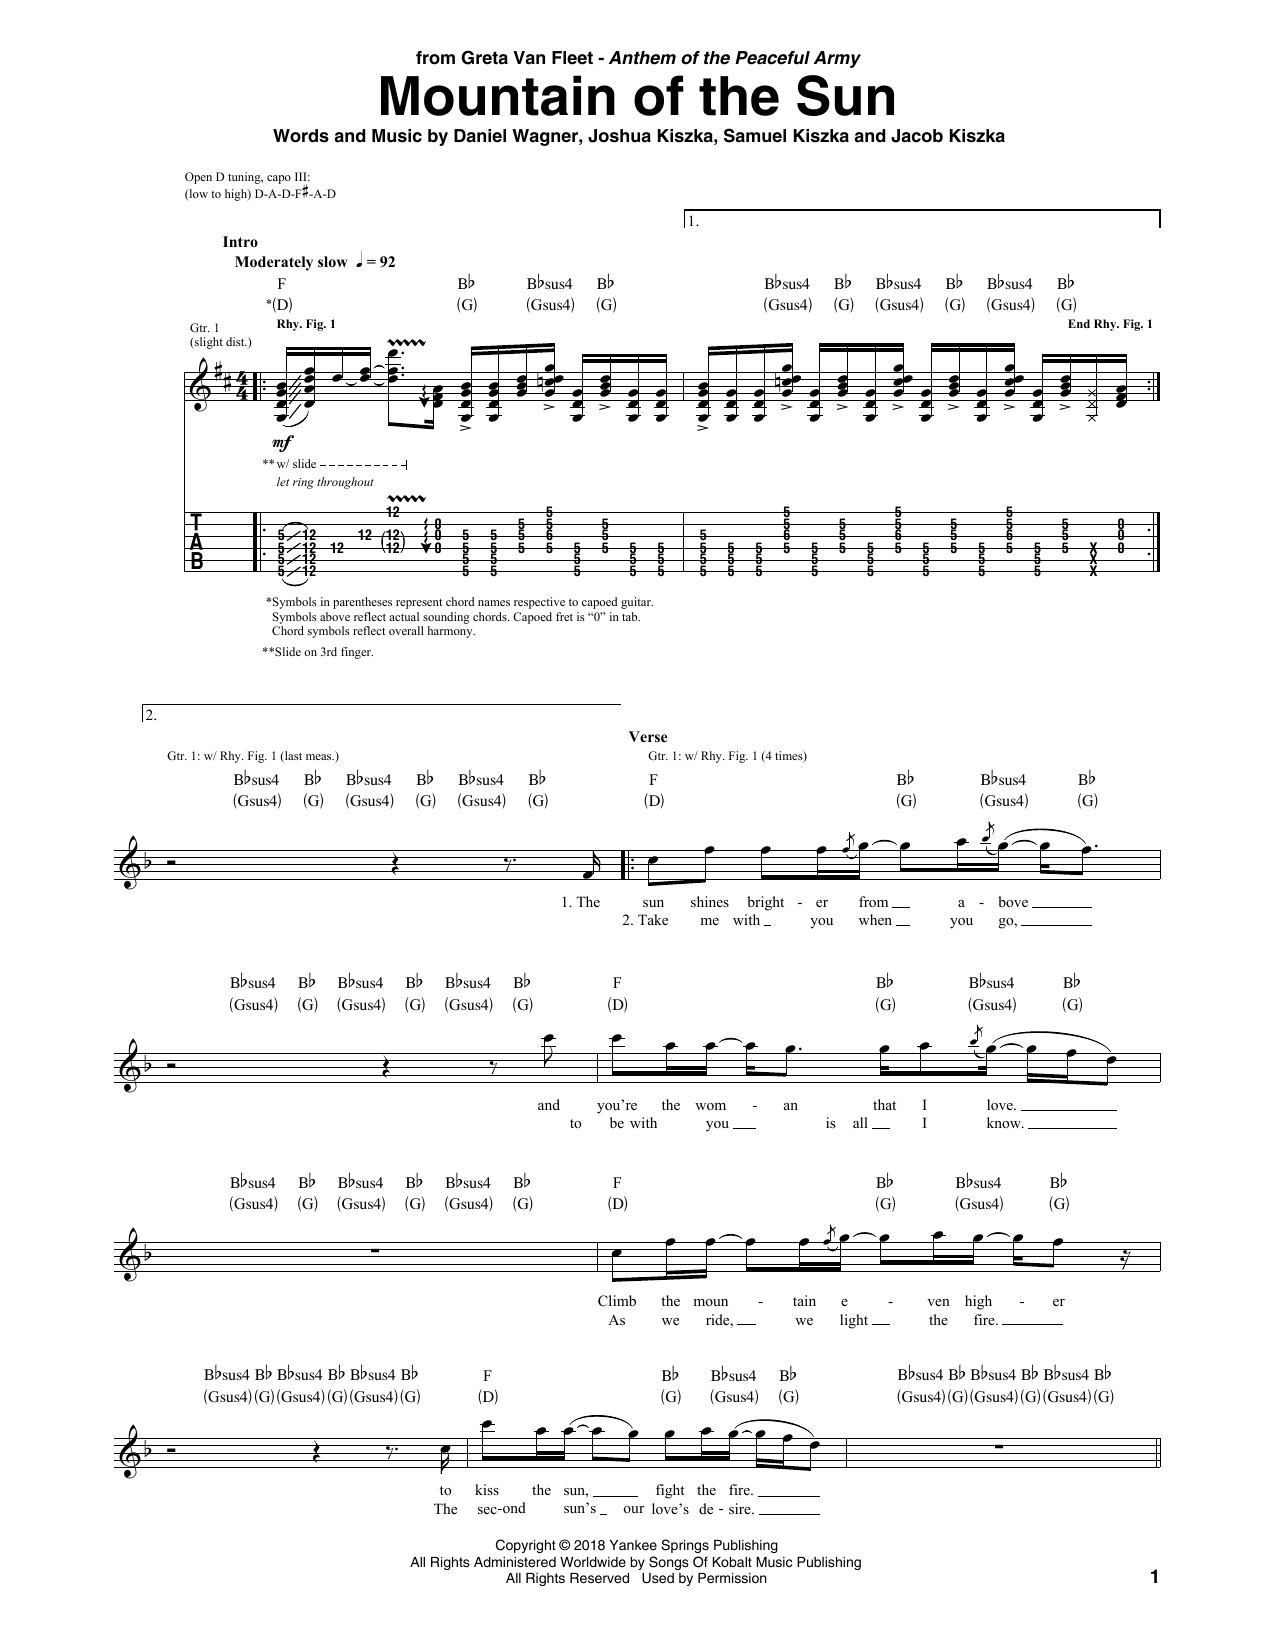 Greta Van Fleet Mountain Of The Sun Sheet Music Notes & Chords for Guitar Tab - Download or Print PDF